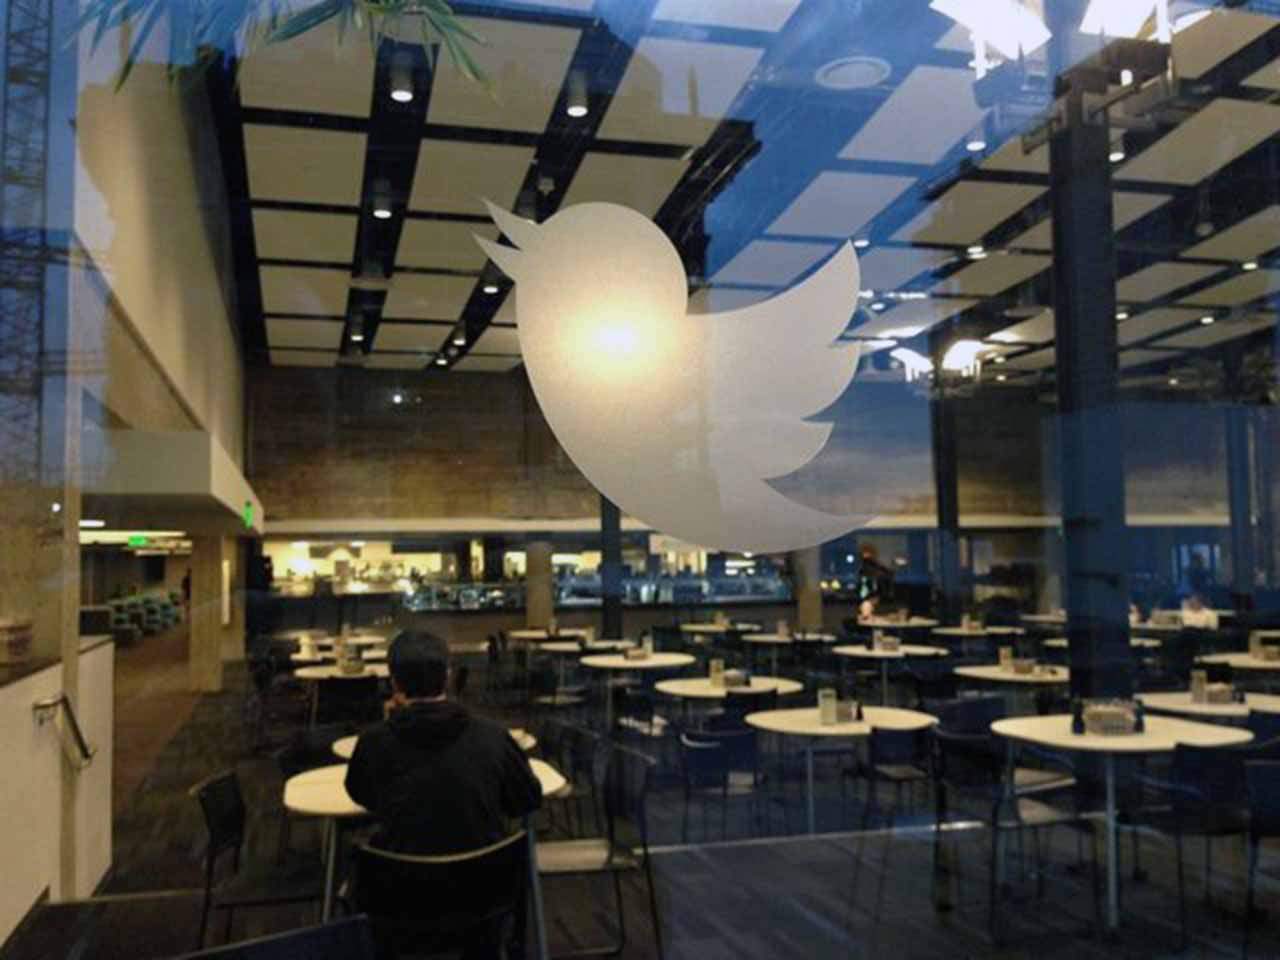 Sede central de la red social Twitter en San Francisco, Estados Unidos / Foto: EP